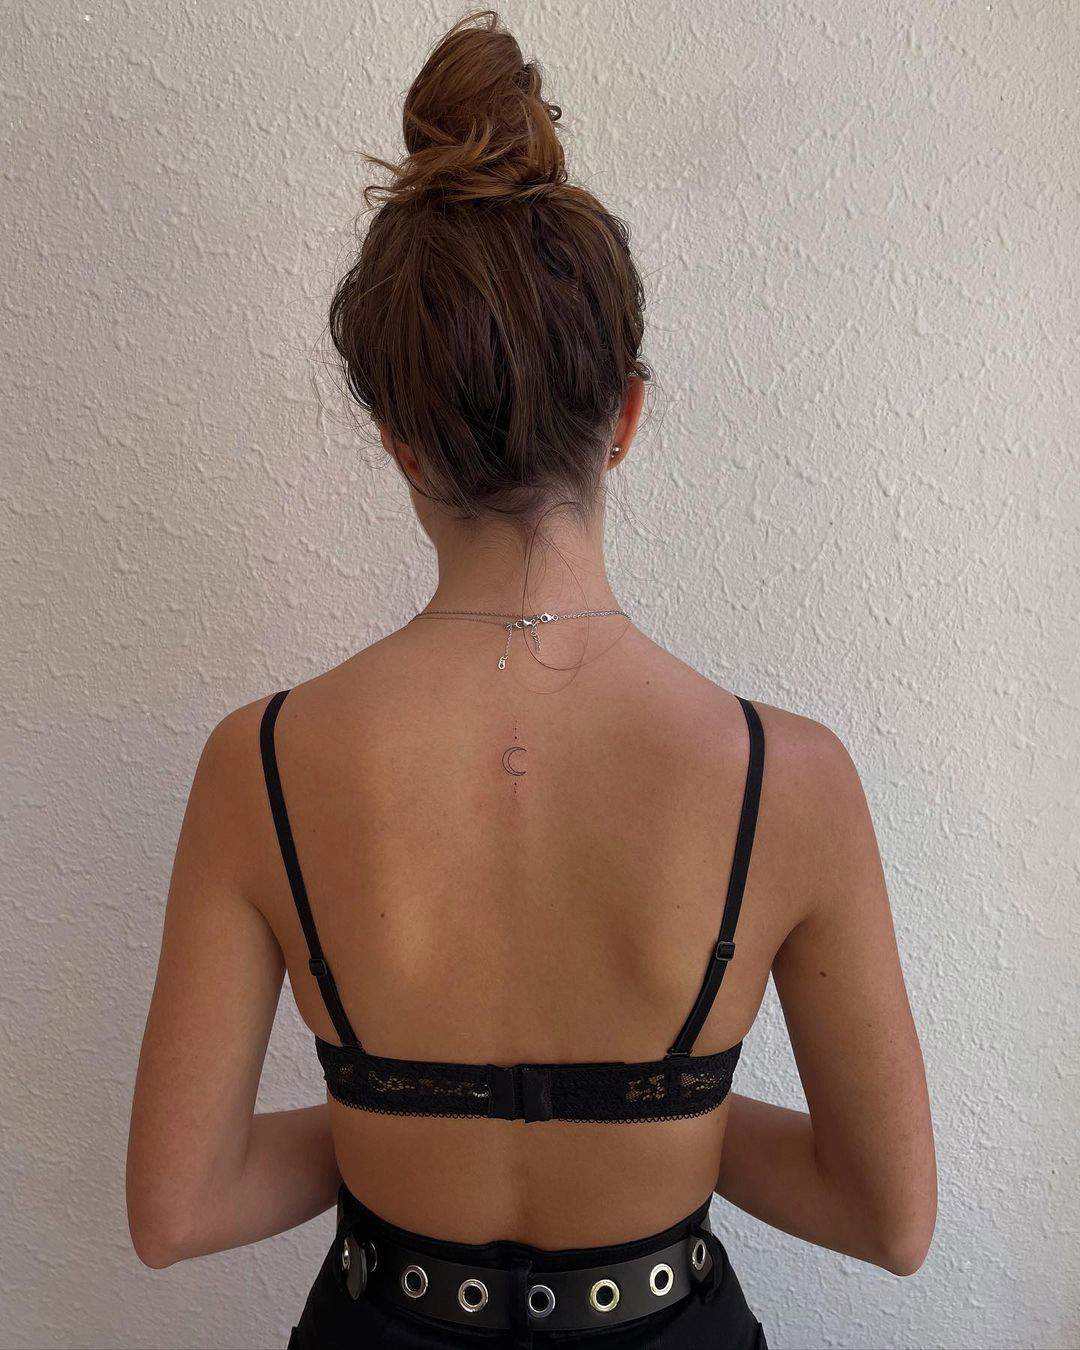 Tatuaje de luna y puntos en la espalda